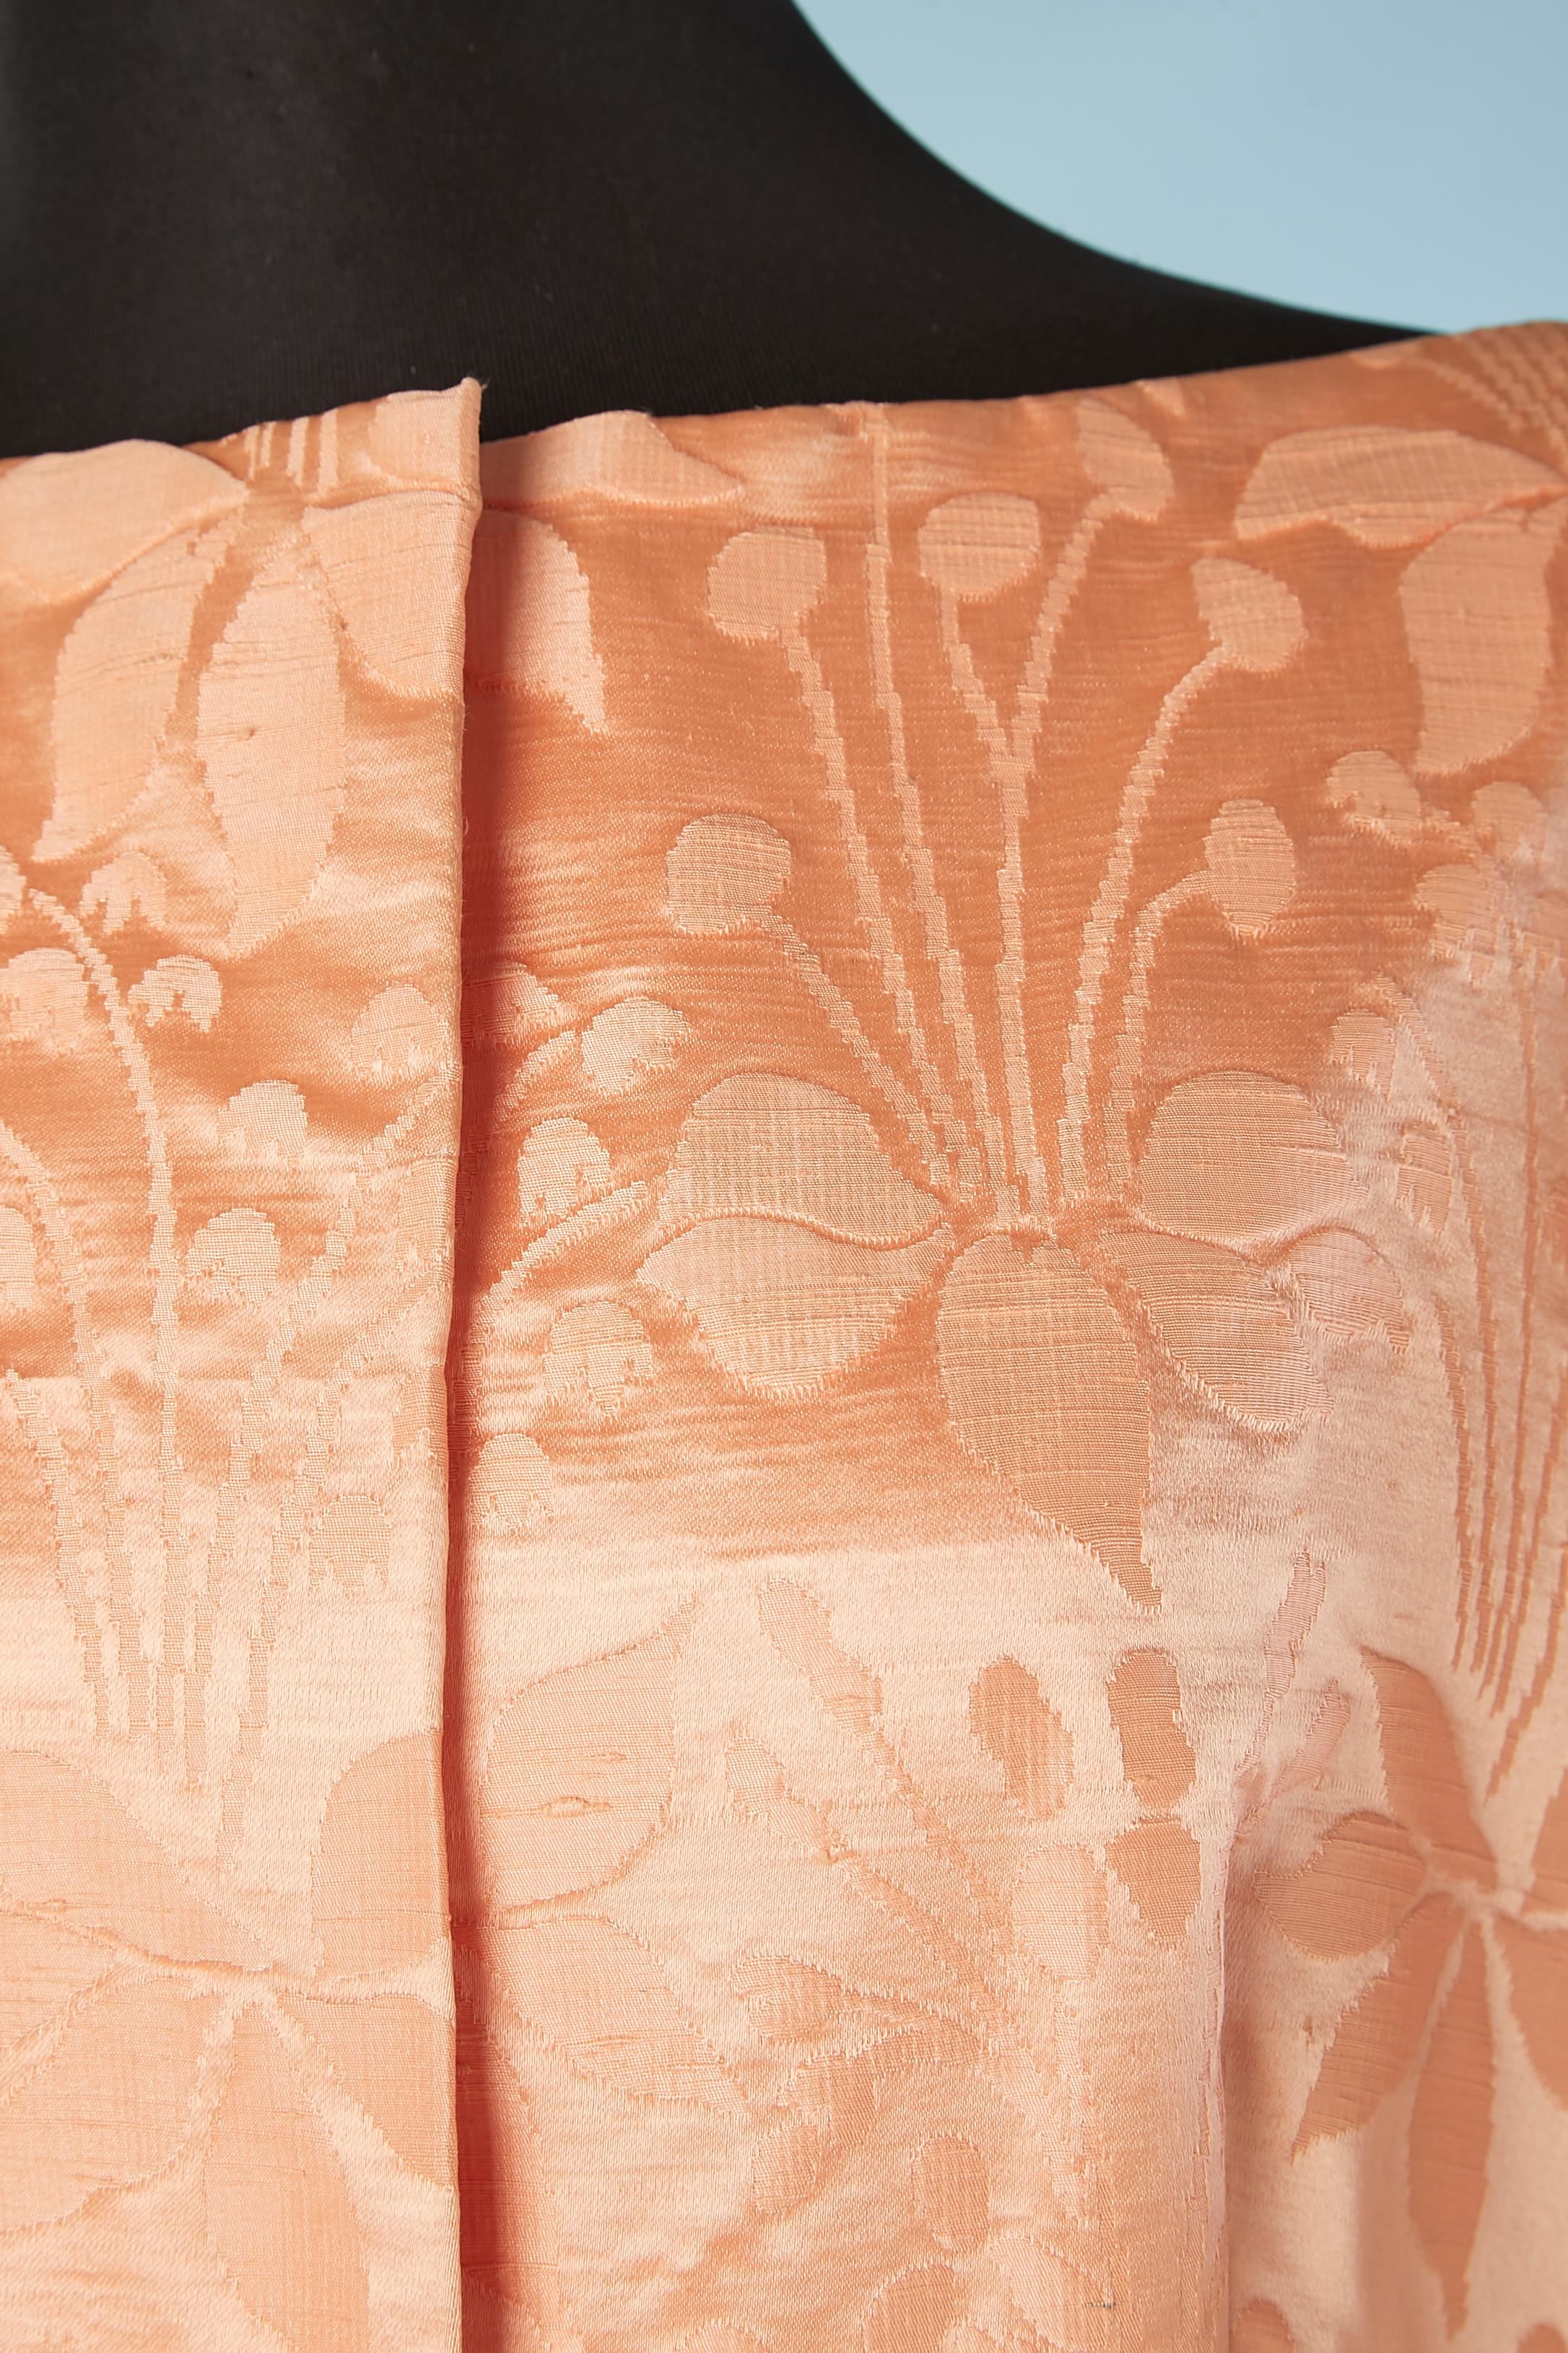 Orange-rosa Damast Abendkleid-Mantel. Raglanärmel. Reißverschluss in der Mitte des Rückens + Druckknopf + Haken & Ösen in der Mitte des Oberteils. 1 Haken und Ösen an der Taille. Geraffte Taille. Orangefarbenes Seidenfutter. CIRCA 1960/70
GRÖSSE M/L